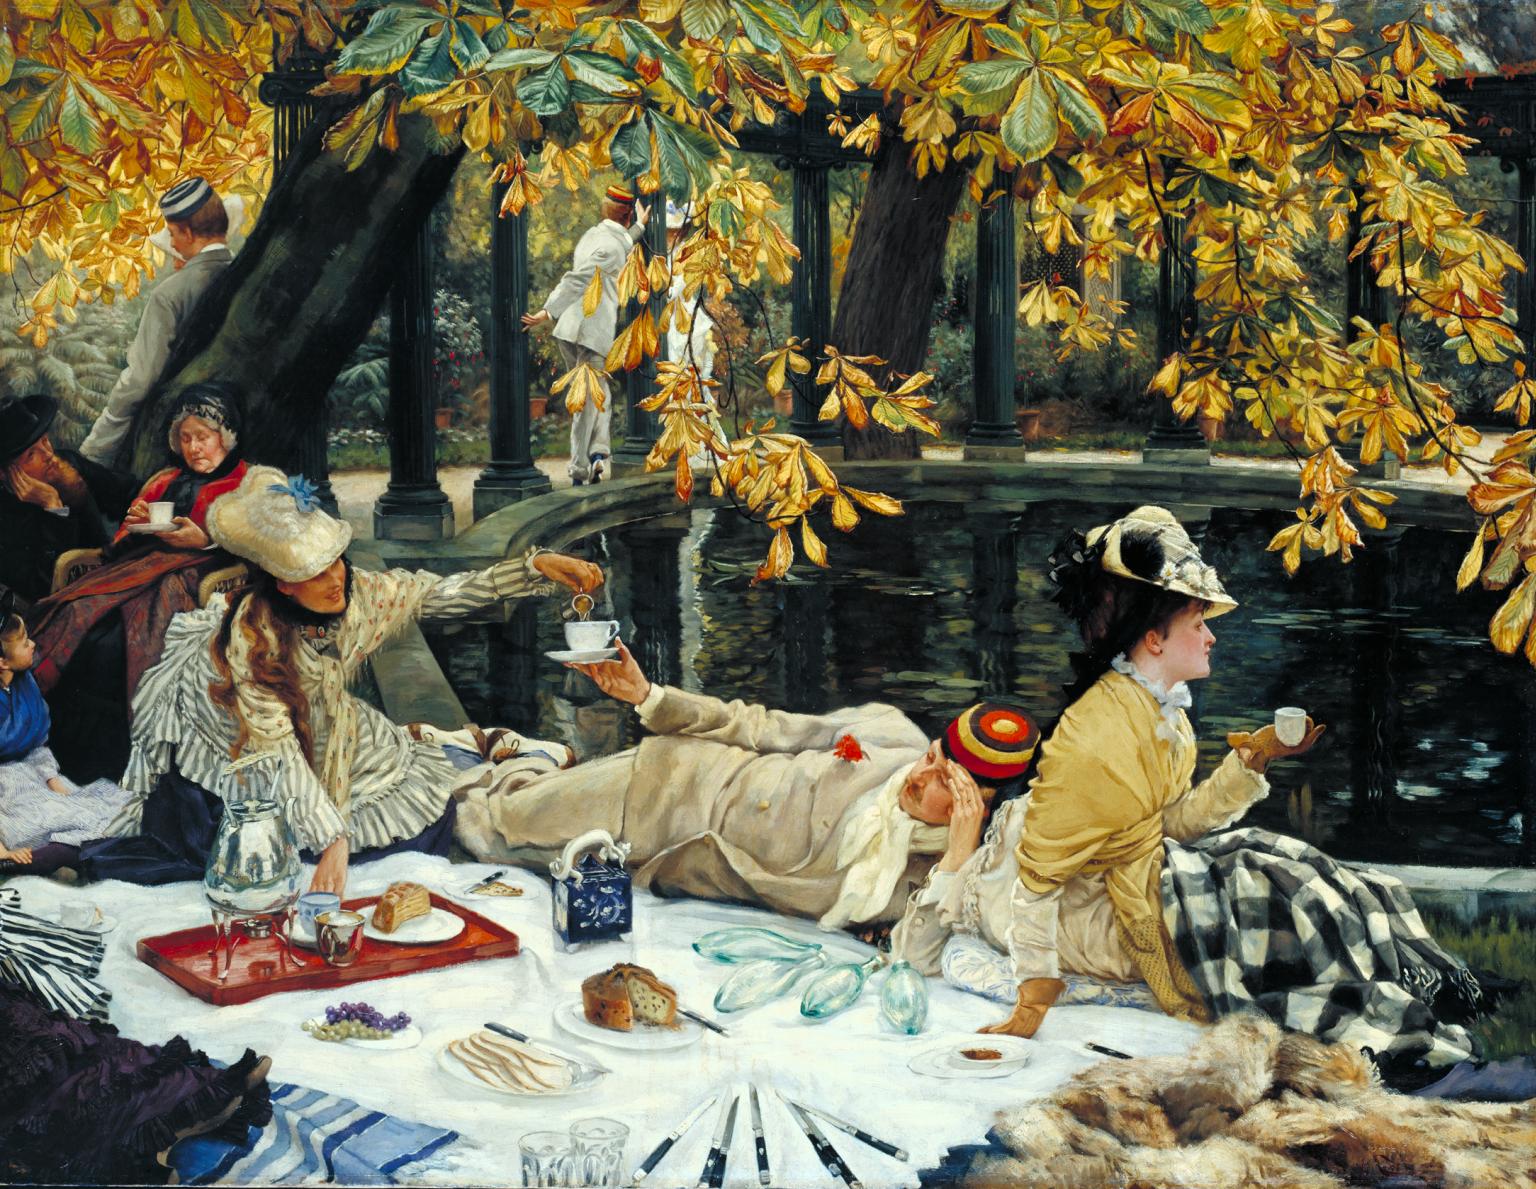 Holyday (auch bekannt als Das Picknick) by James Tissot - c. 1876 - 76.2 x 99.4 cm Tate Modern